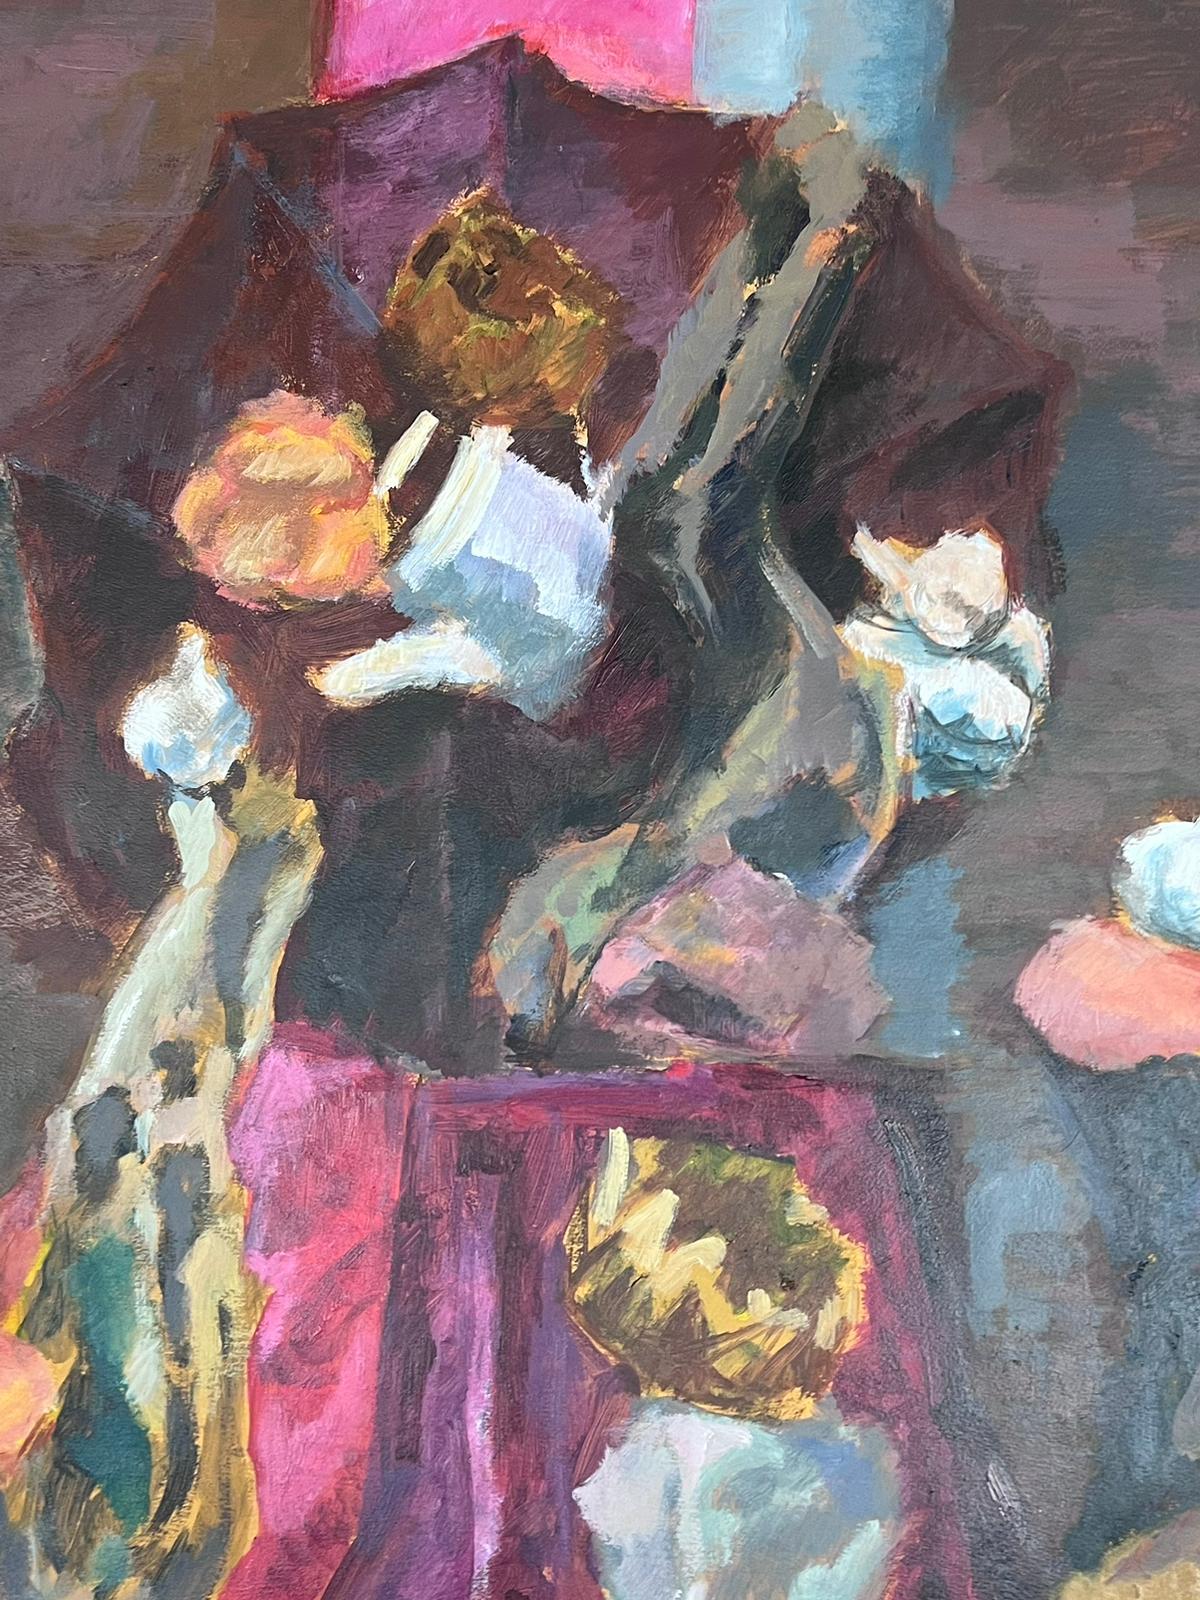 Lila Interieur
von Guy Nicod
(Französisch 1923 - 2021)
Öl auf Künstlerpapier, ungerahmt
Gemälde : 26 x 20 Zoll
Herkunft: Künstlernachlass, Frankreich
Zustand: sehr guter und gesunder Zustand